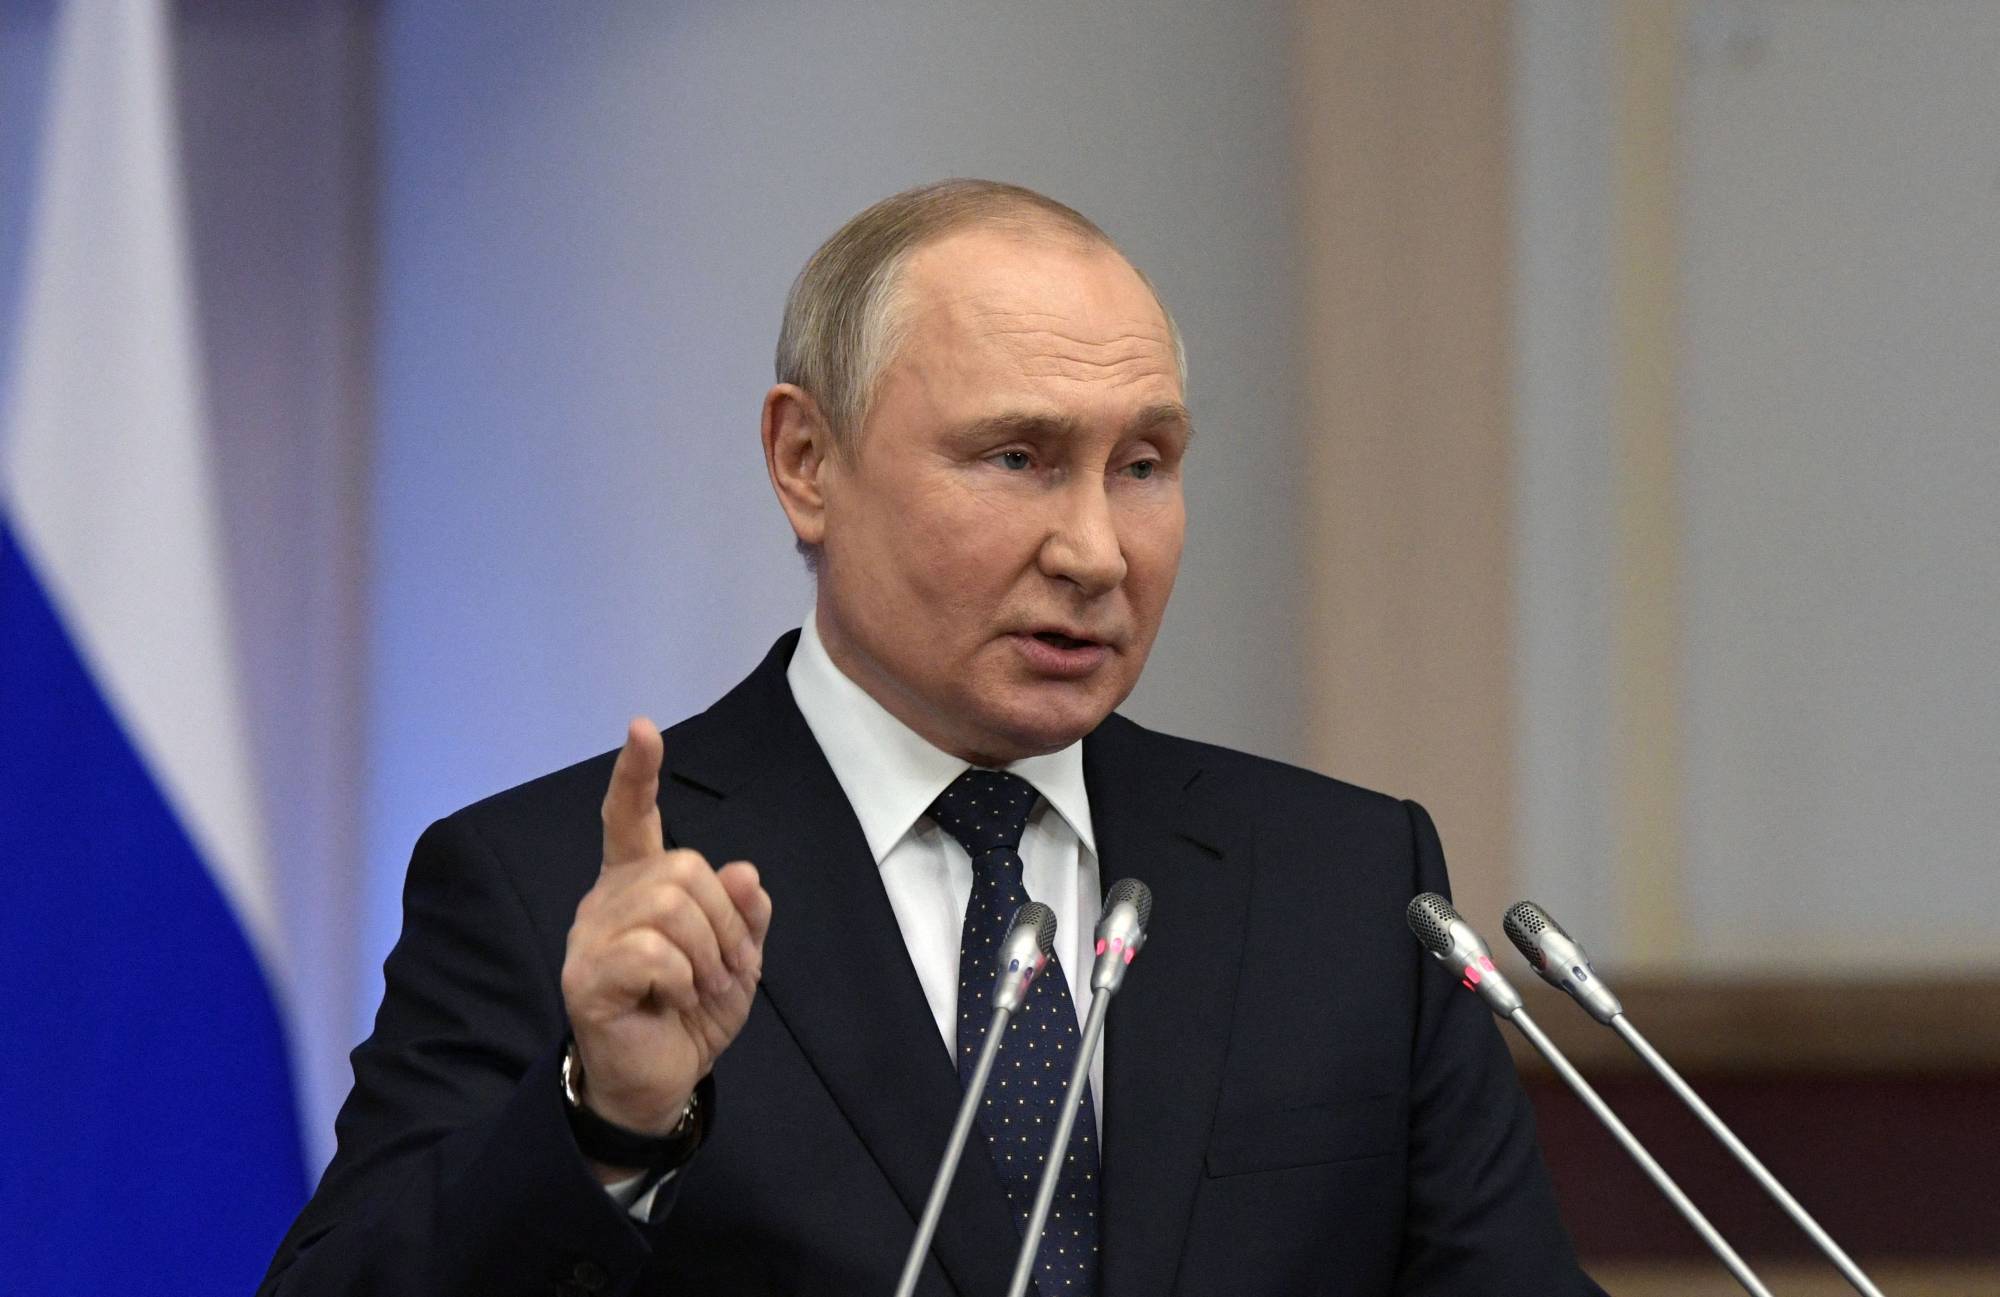 Ông Putin đã nhận lời mời tham dự hội nghị G20 ở Indonesia vào cuối năm nay.